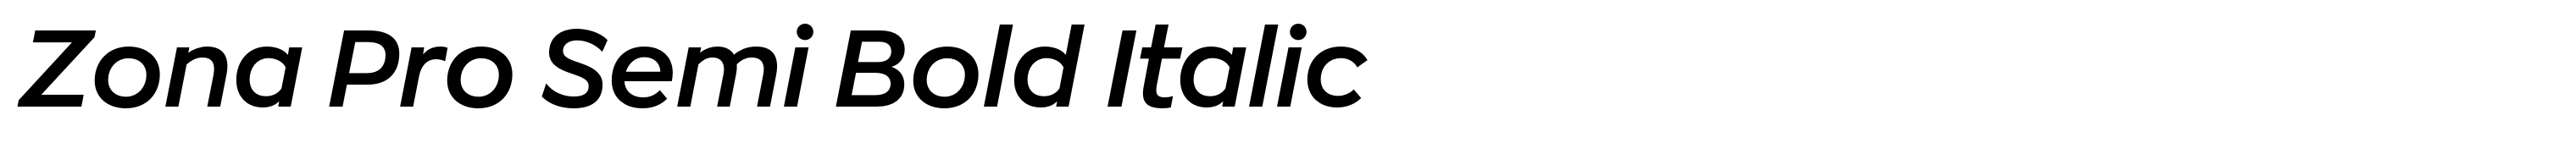 Zona Pro Semi Bold Italic